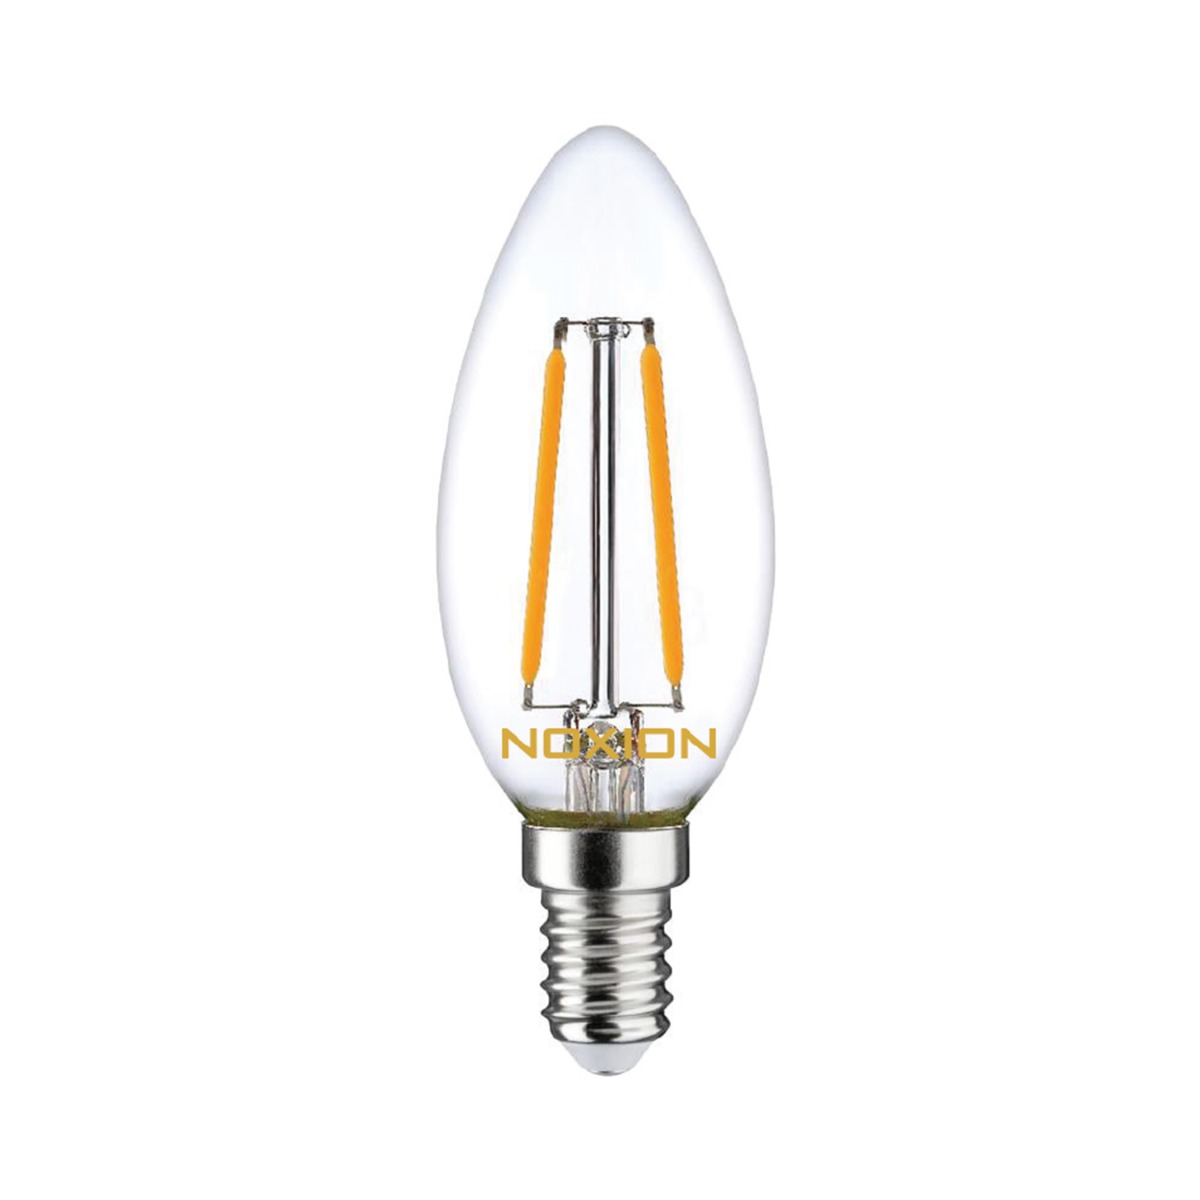 Noxion Lucent Kooldraad LED Candle 2.5W 827 B35 E14 Helder | Dimbaar - Vervanger voor 25W